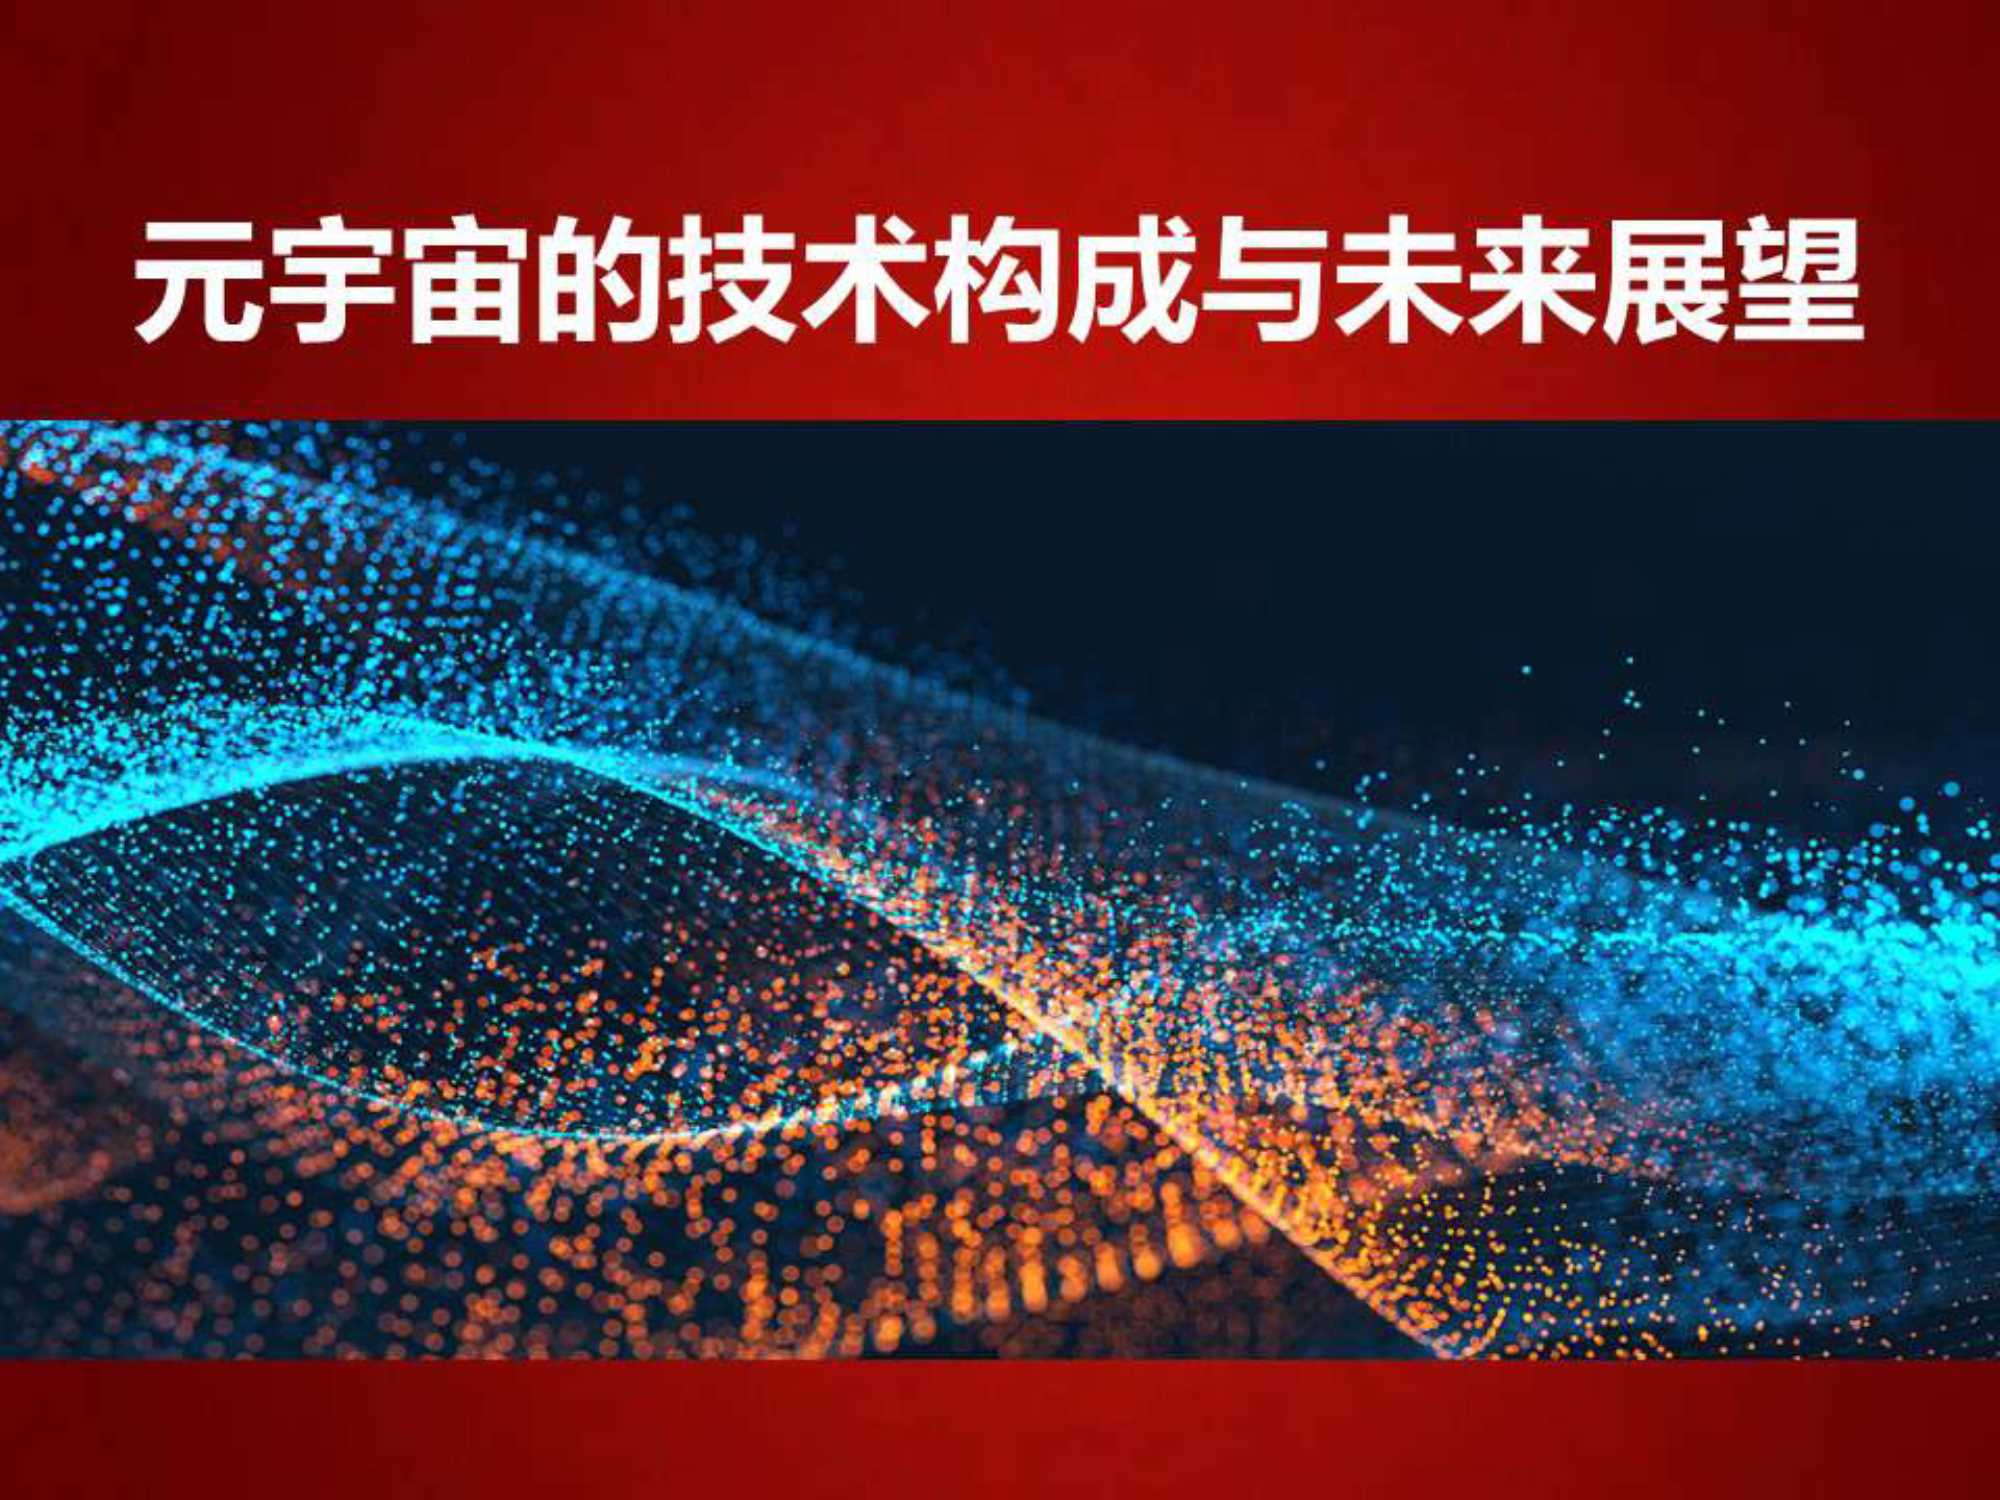 王喜文-元宇宙的技术构成与未来展望-2022.04-112页